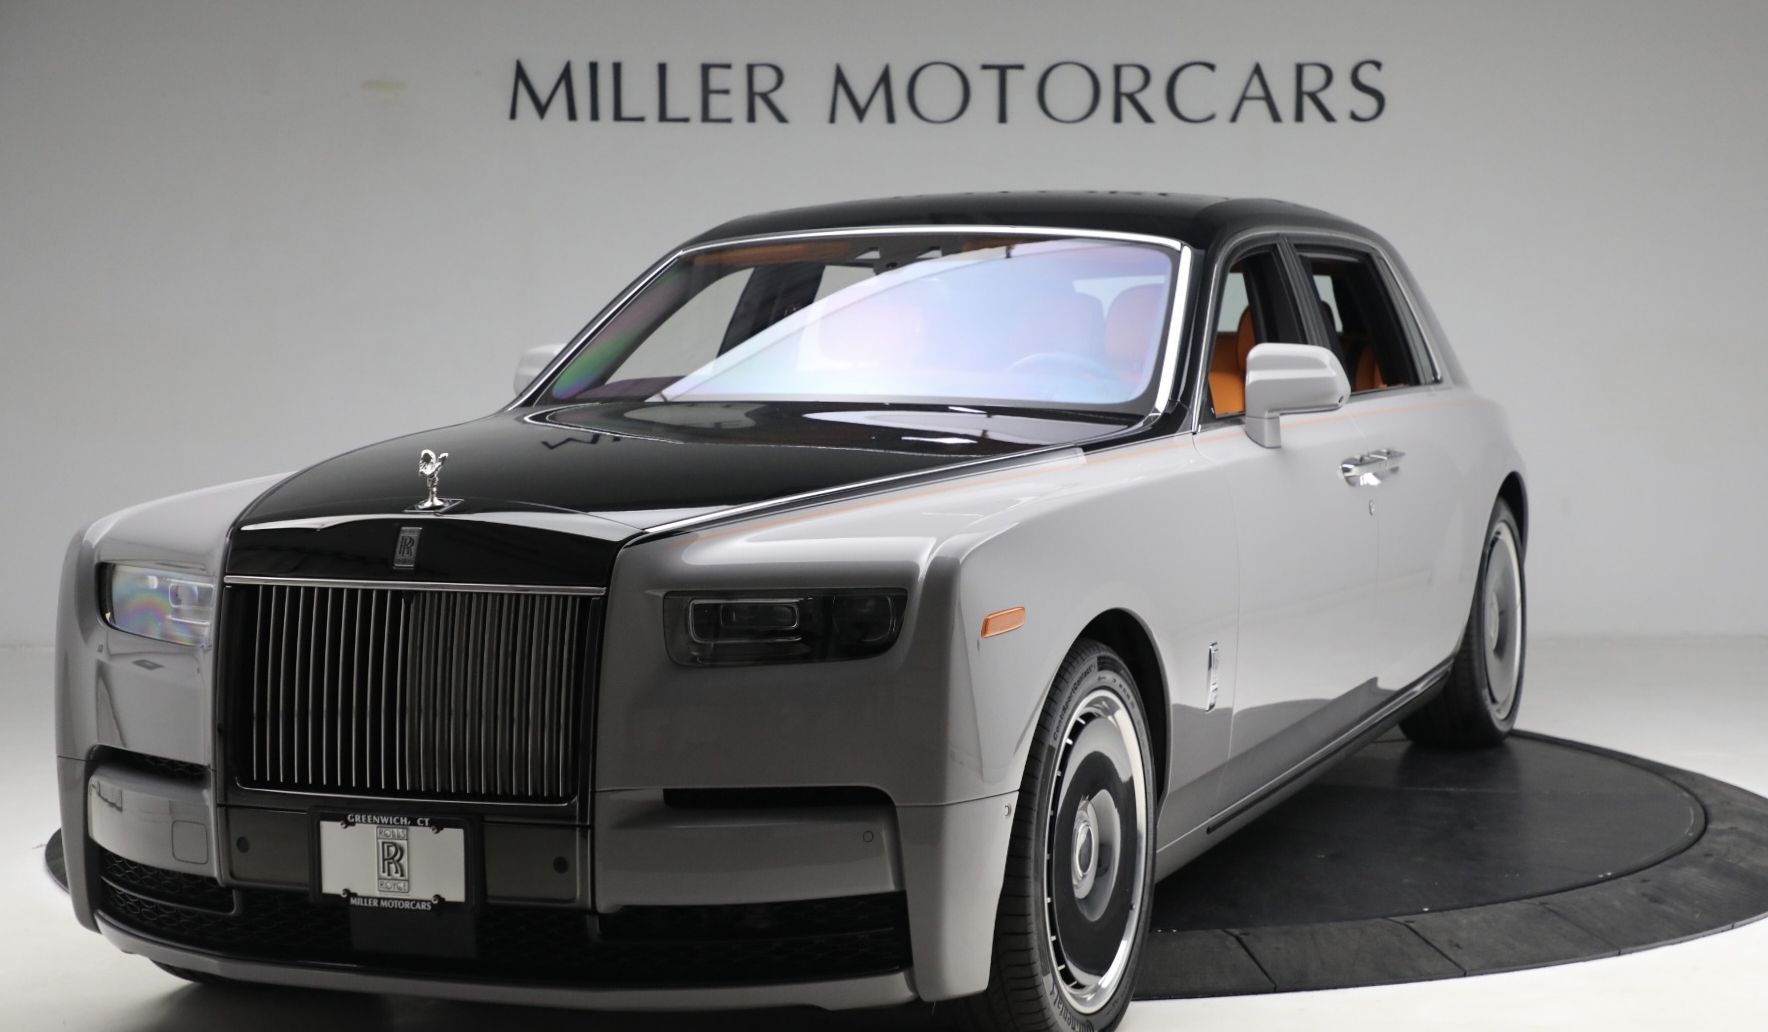 Rolls-Royce Phantom Mobil Super Sport Kombinasi Fitur Hibrida dan Teknologi Canggih Kecepatan Tinggi